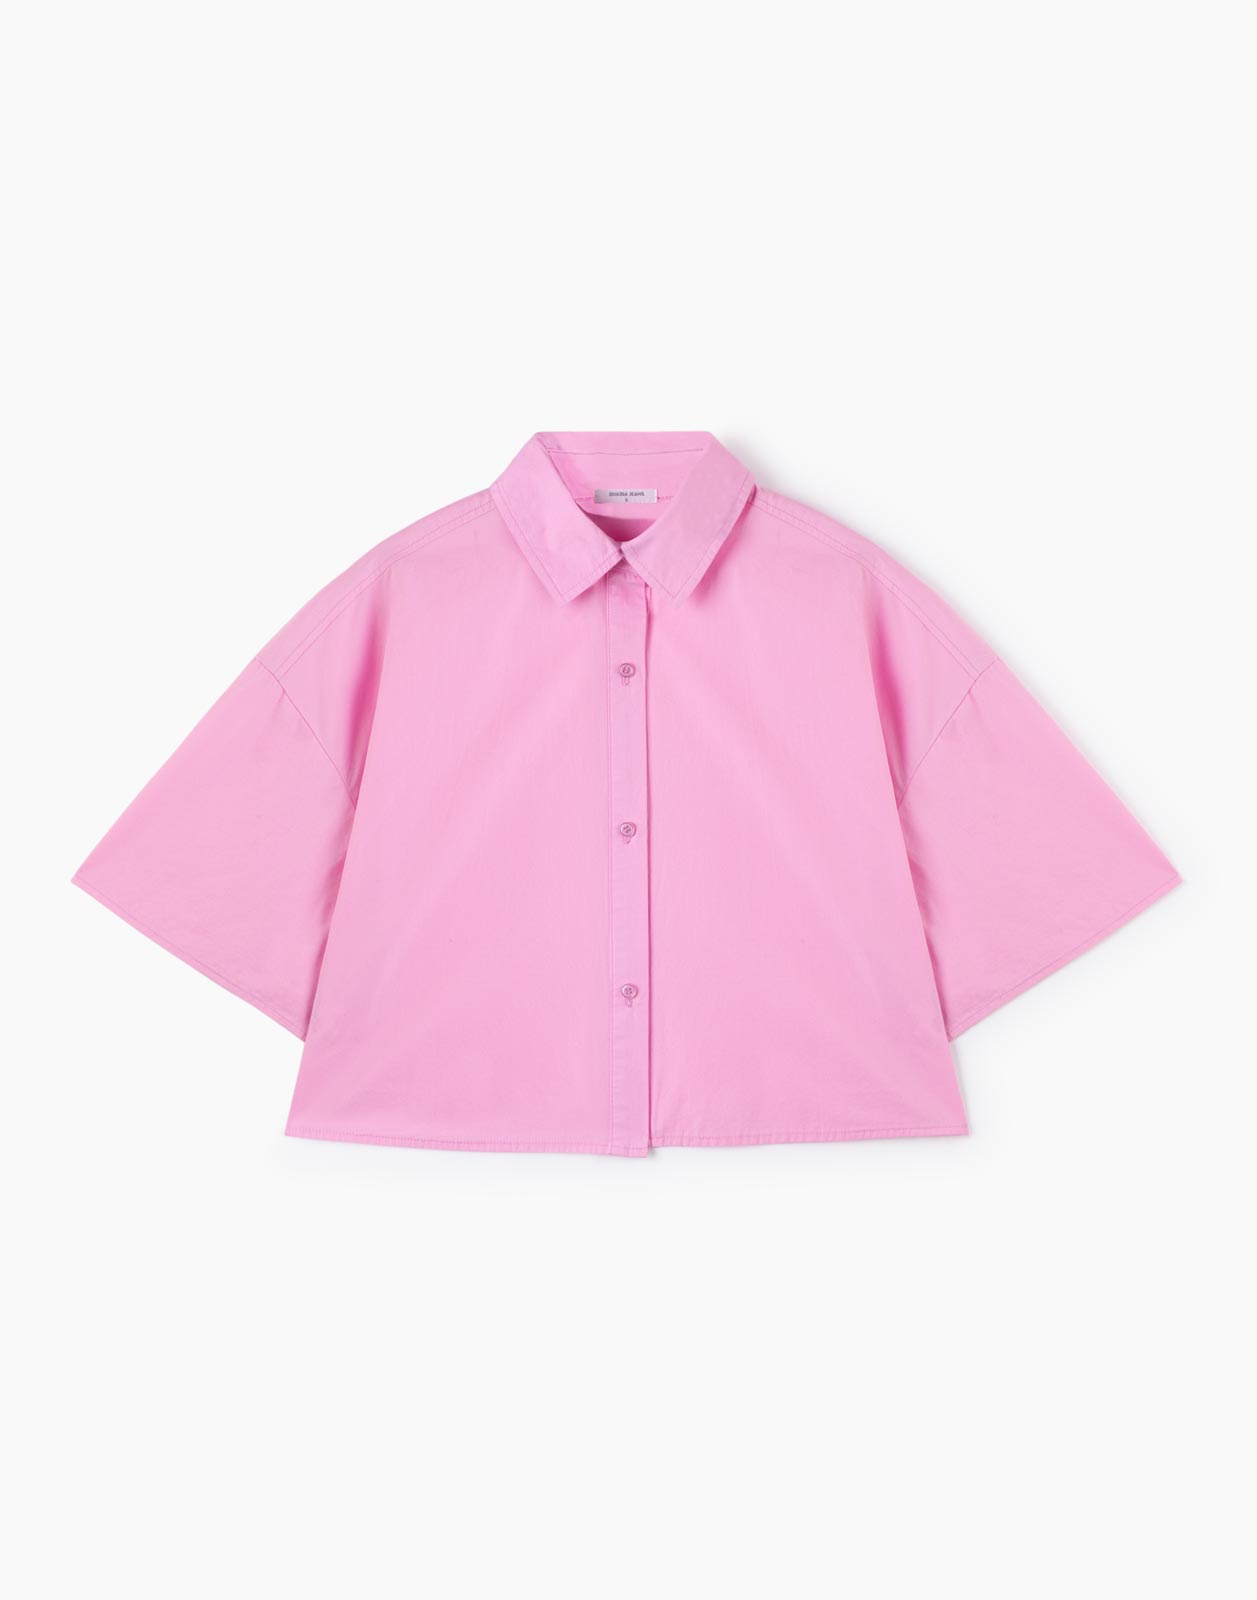 Рубашка женская Gloria Jeans GWT003024 розовая S